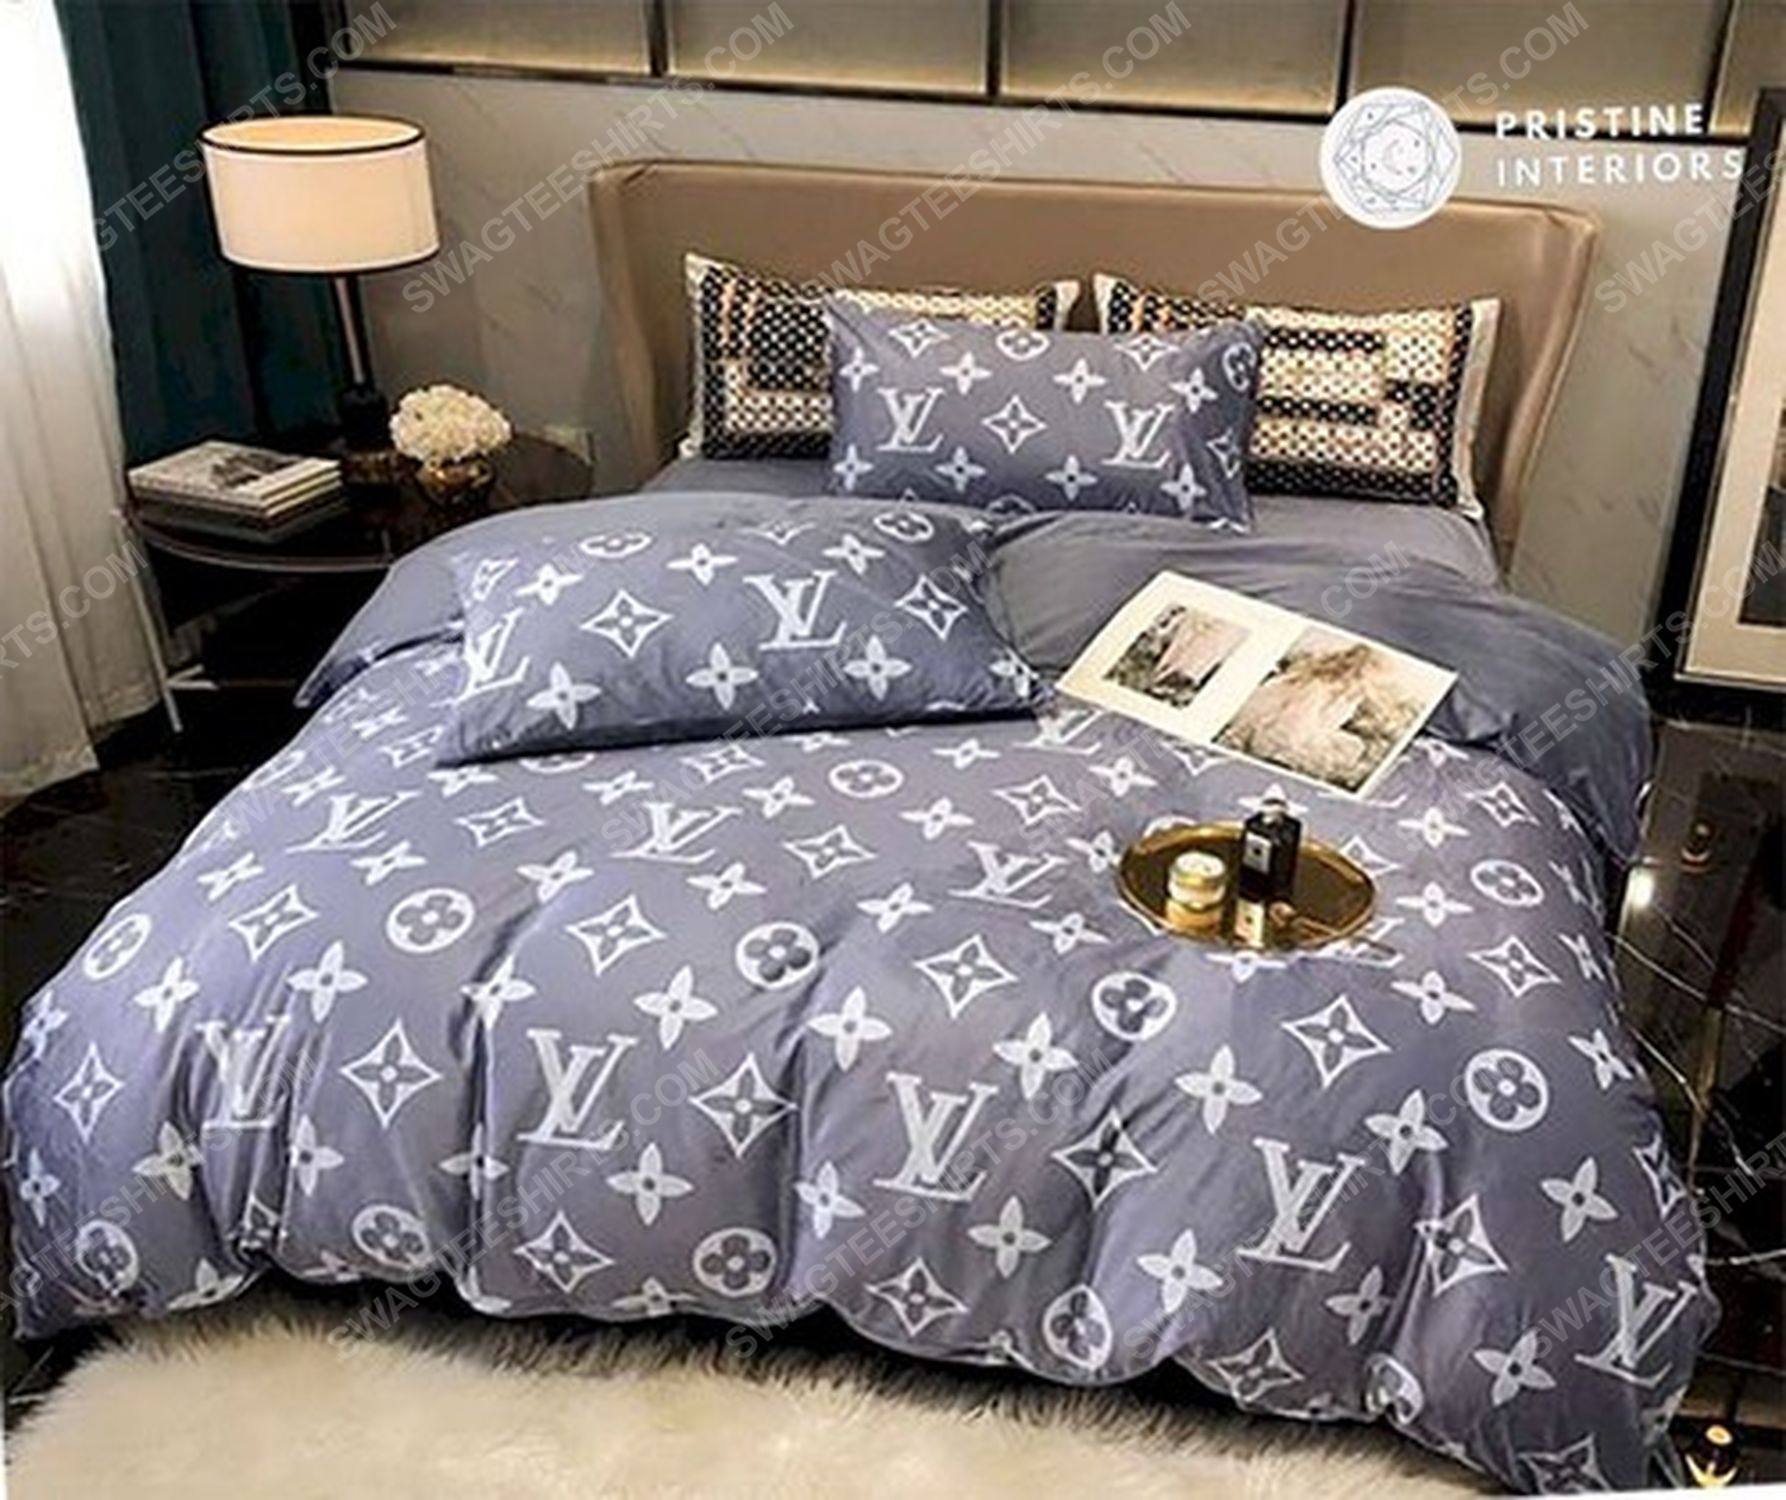 Lv monogram full print duvet cover bedding set 1